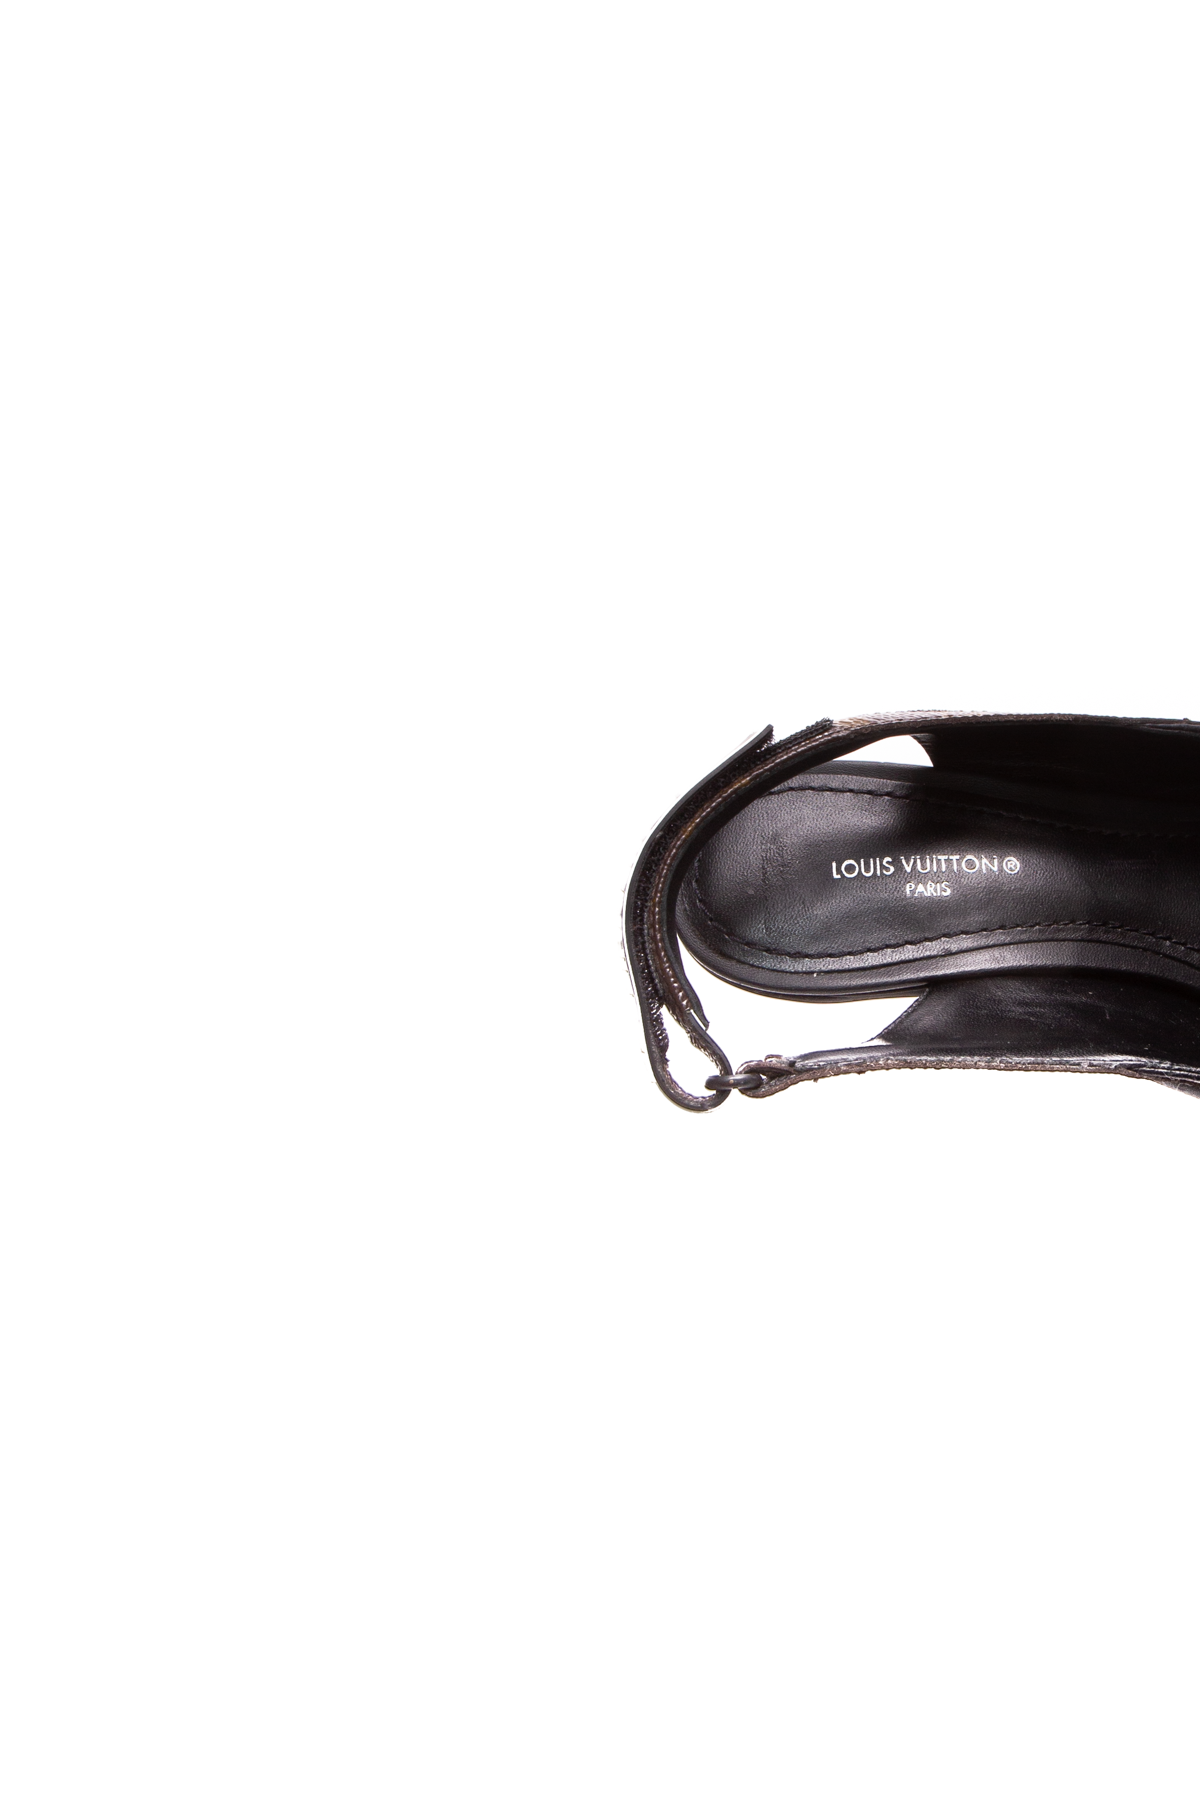 Louis Vuitton black Archlight Slingback Pumps